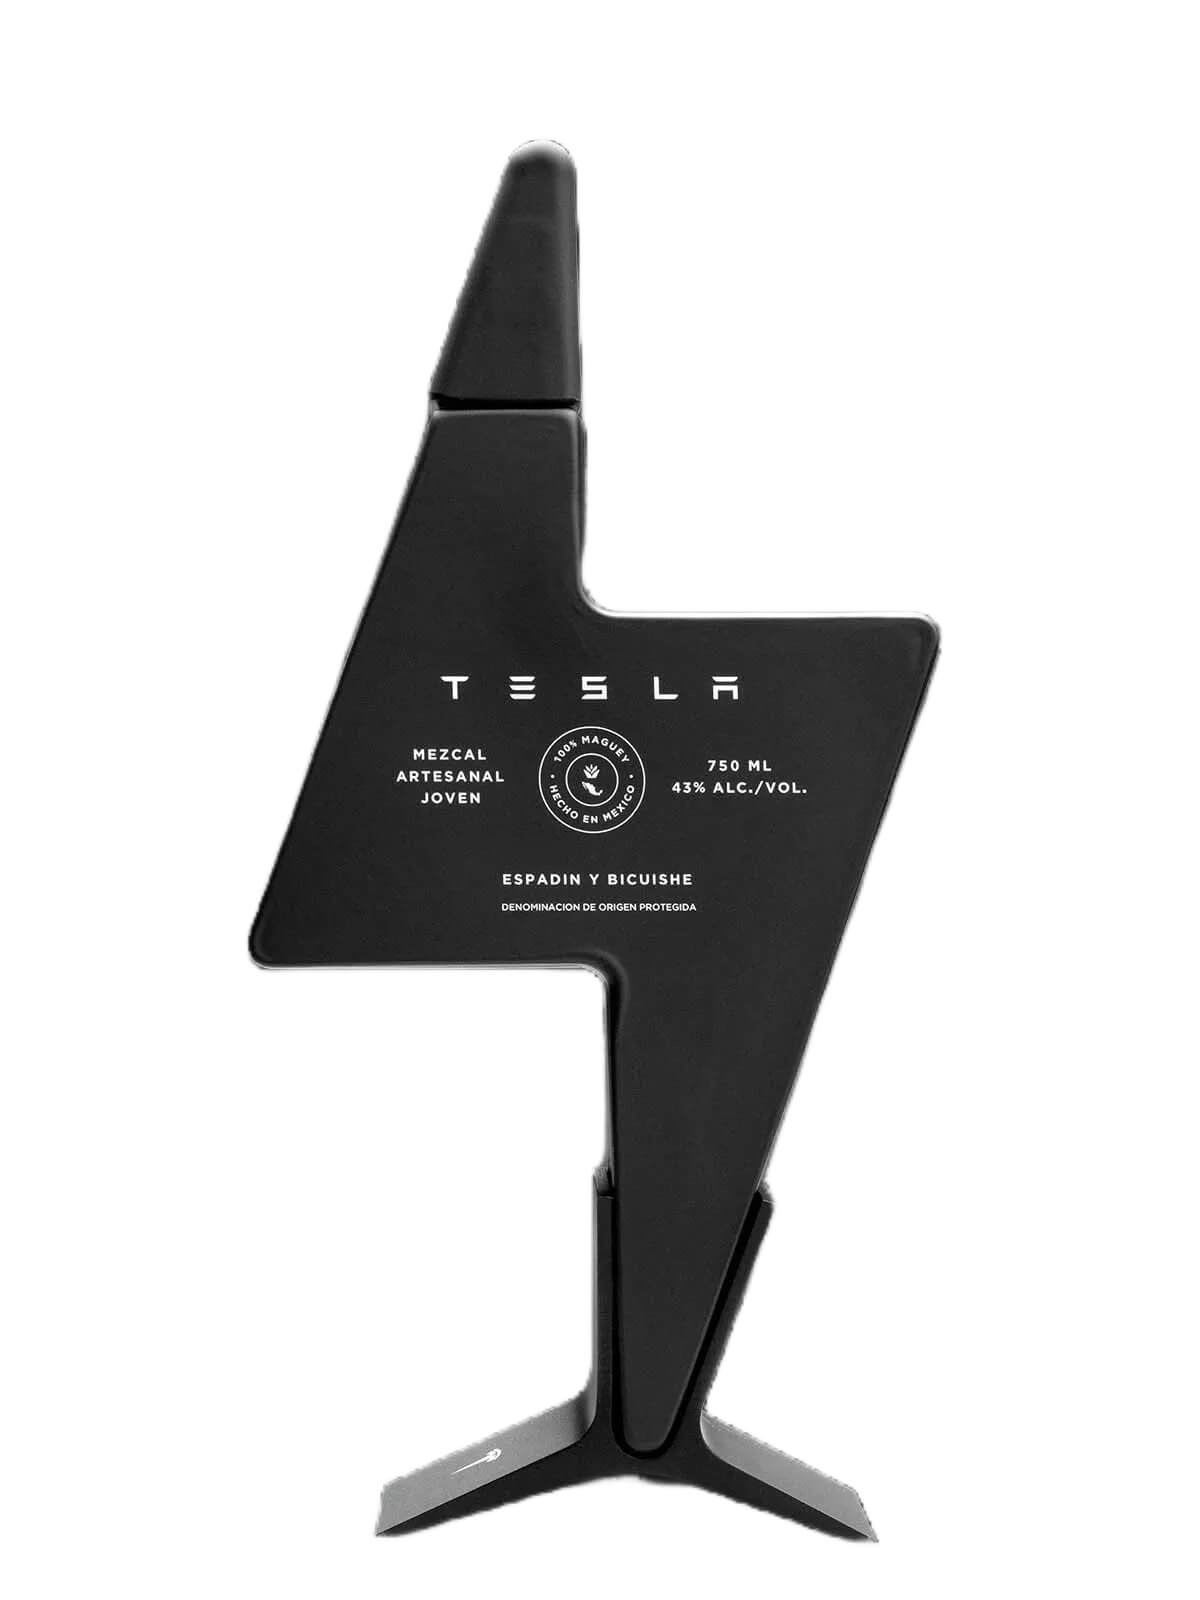 Lightning bolt shape black bottle of Tesla Mezcal